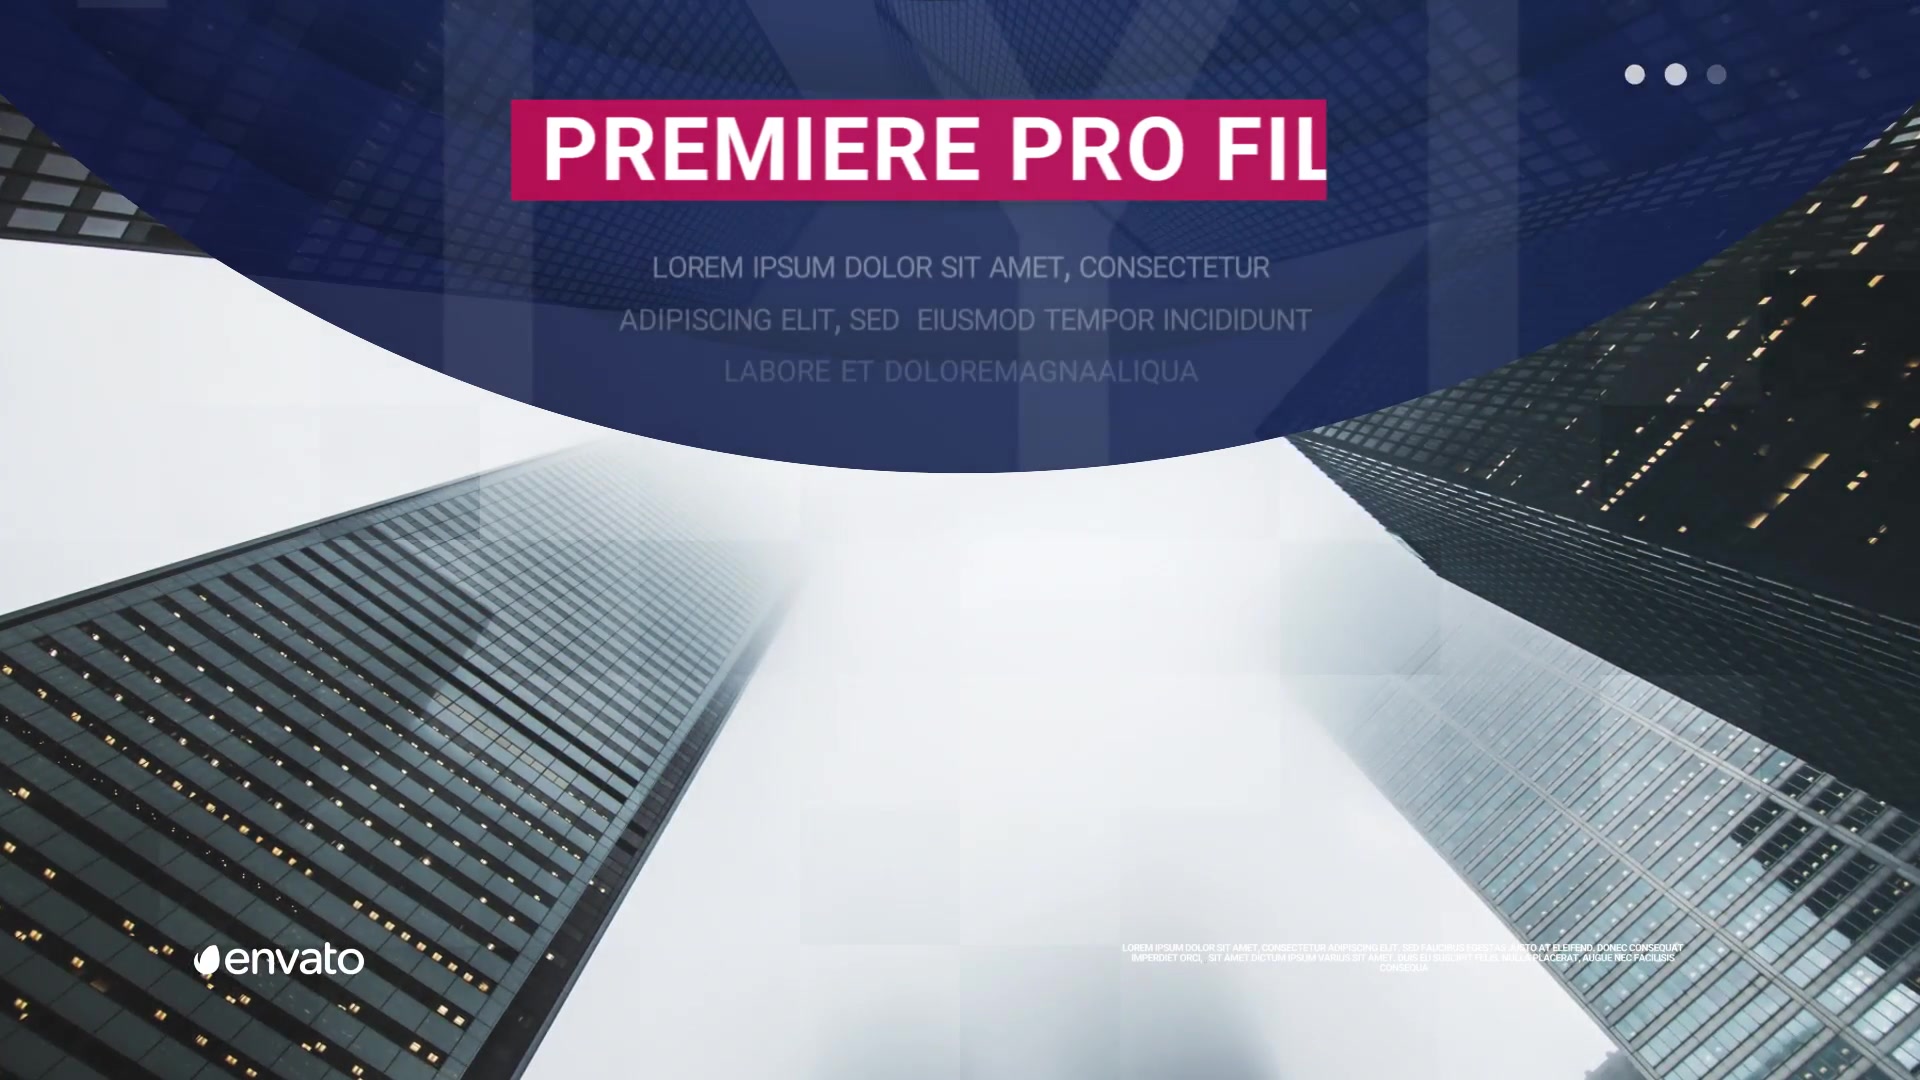 Corporate Presentation Videohive 22235275 Premiere Pro Image 8